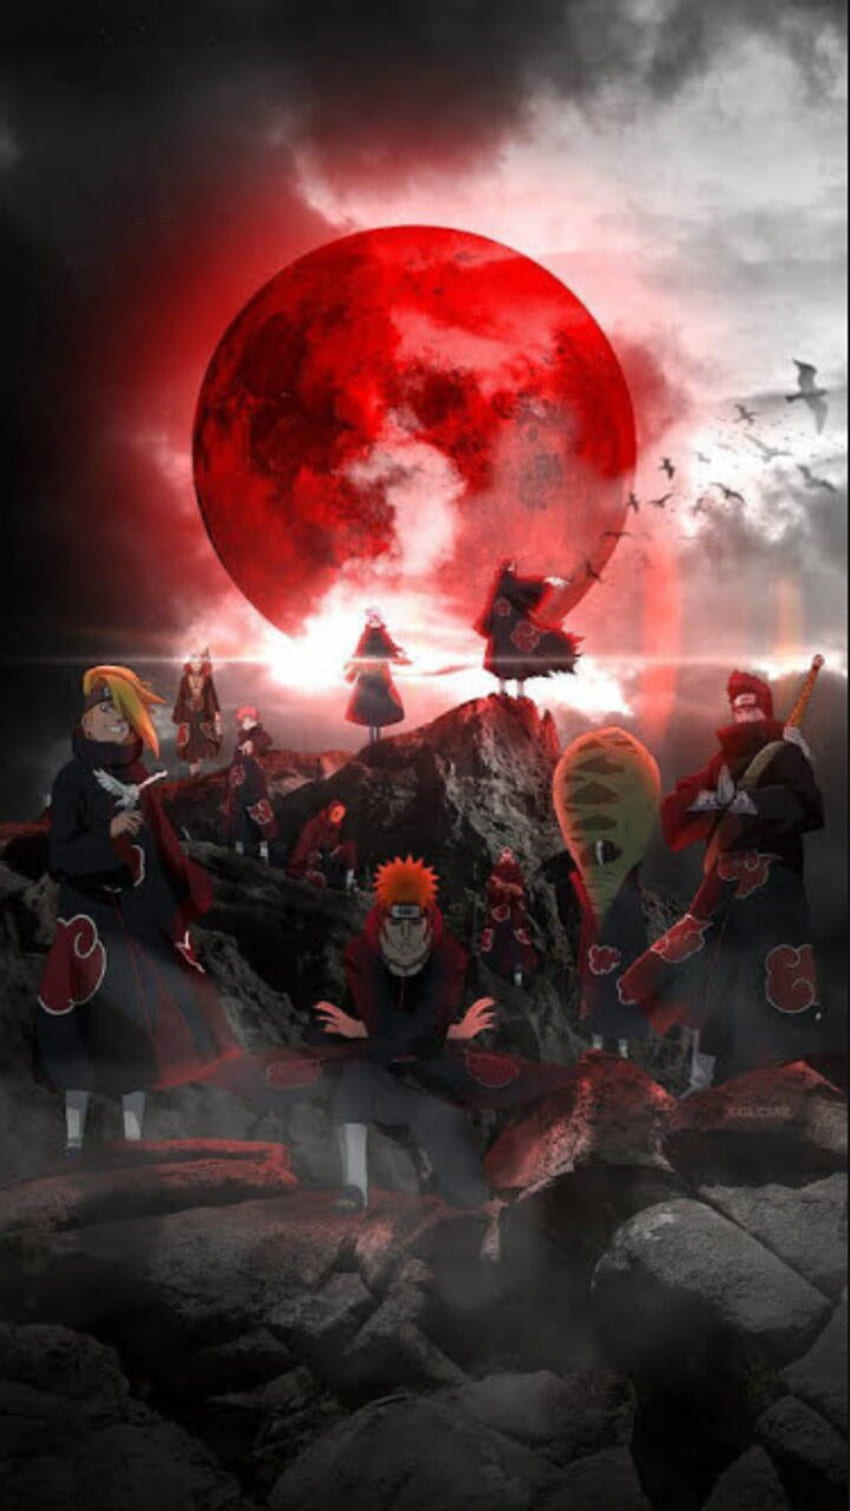 Akatsuki Naruto: Akatsuki là một trong những nhóm phản diện bá đạo nhất trong thế giới Naruto. Hãy tìm hiểu thêm về chiến thuật của nhóm và những chiến binh tài ba của Konoha như Naruto trong hình ảnh liên quan đến Akatsuki Naruto.